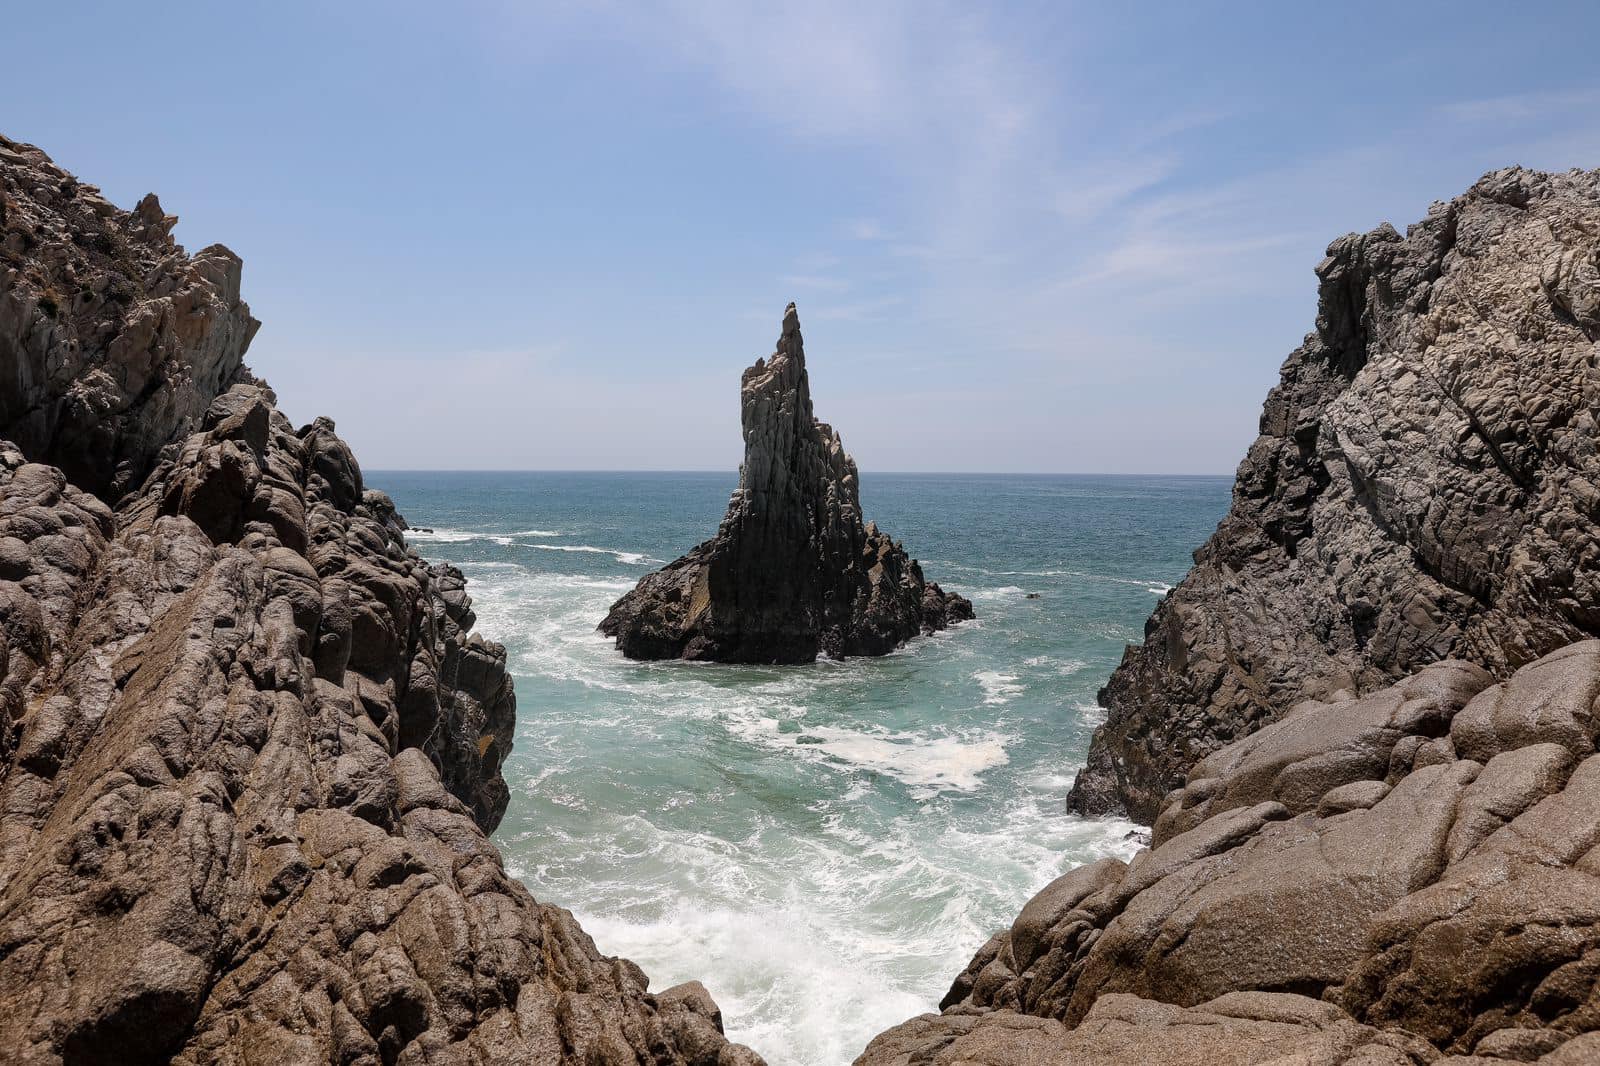 Esta formación rocosa ubicada en la playa de Maruata, en el municipio de Aquila, a unos 300 kilómetros del puerto de Lázaro Cárdenas, es uno de los secretos más hermosos que existen en Michoacán, el alma de México, ¿ya la conoces?